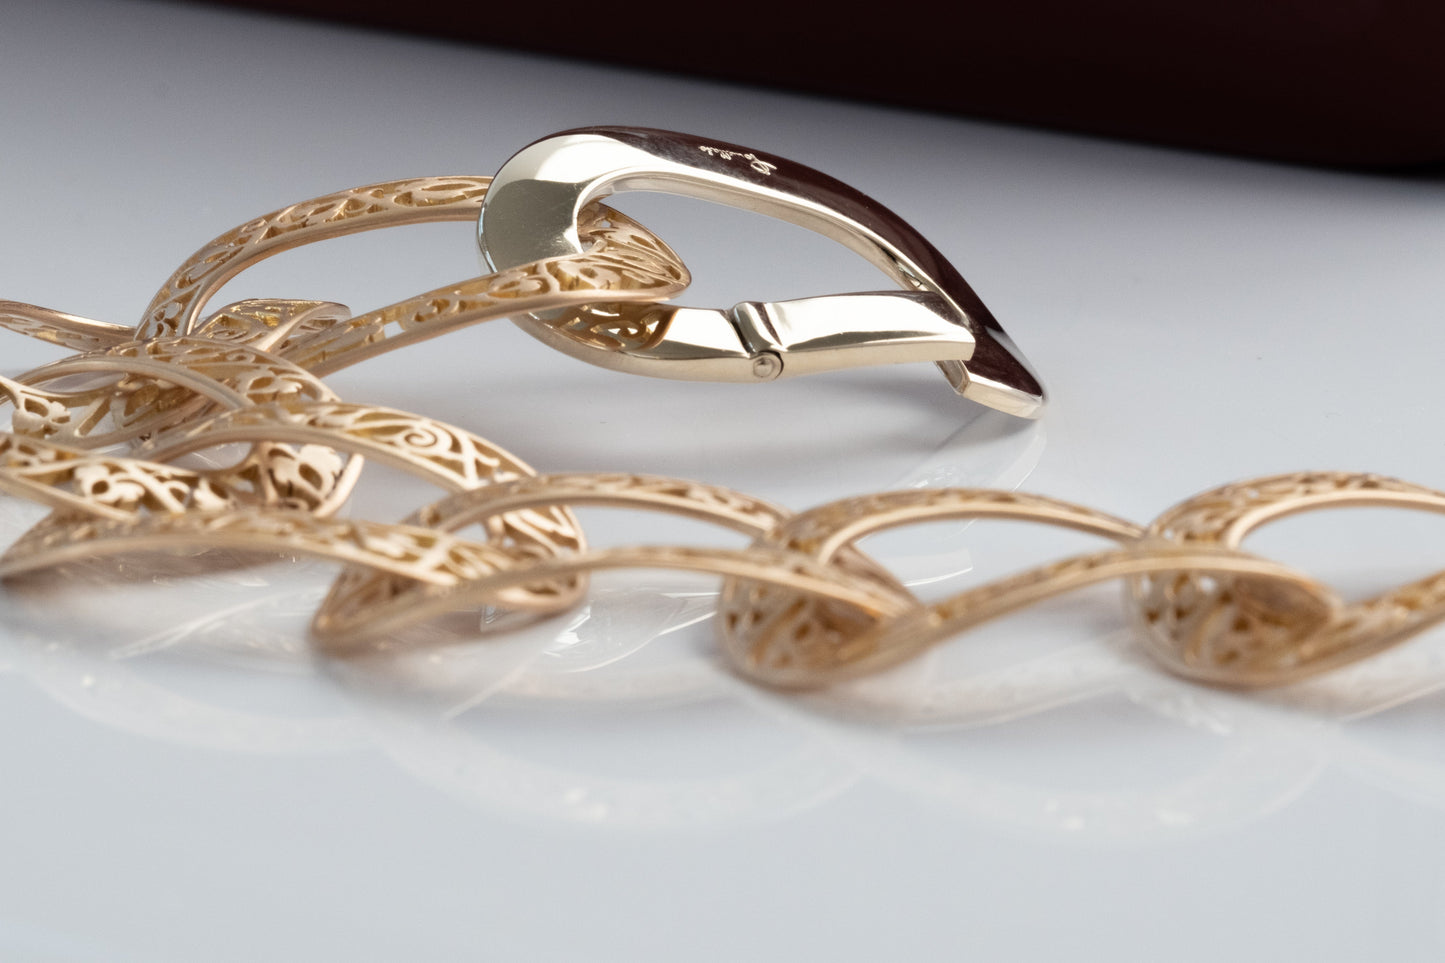 Pomellato 18K Gold Oval Arabesque Link Bracelet - Premium Bracelet from All The Best Vintage - Just $7695! Shop now at All The Best Vintage